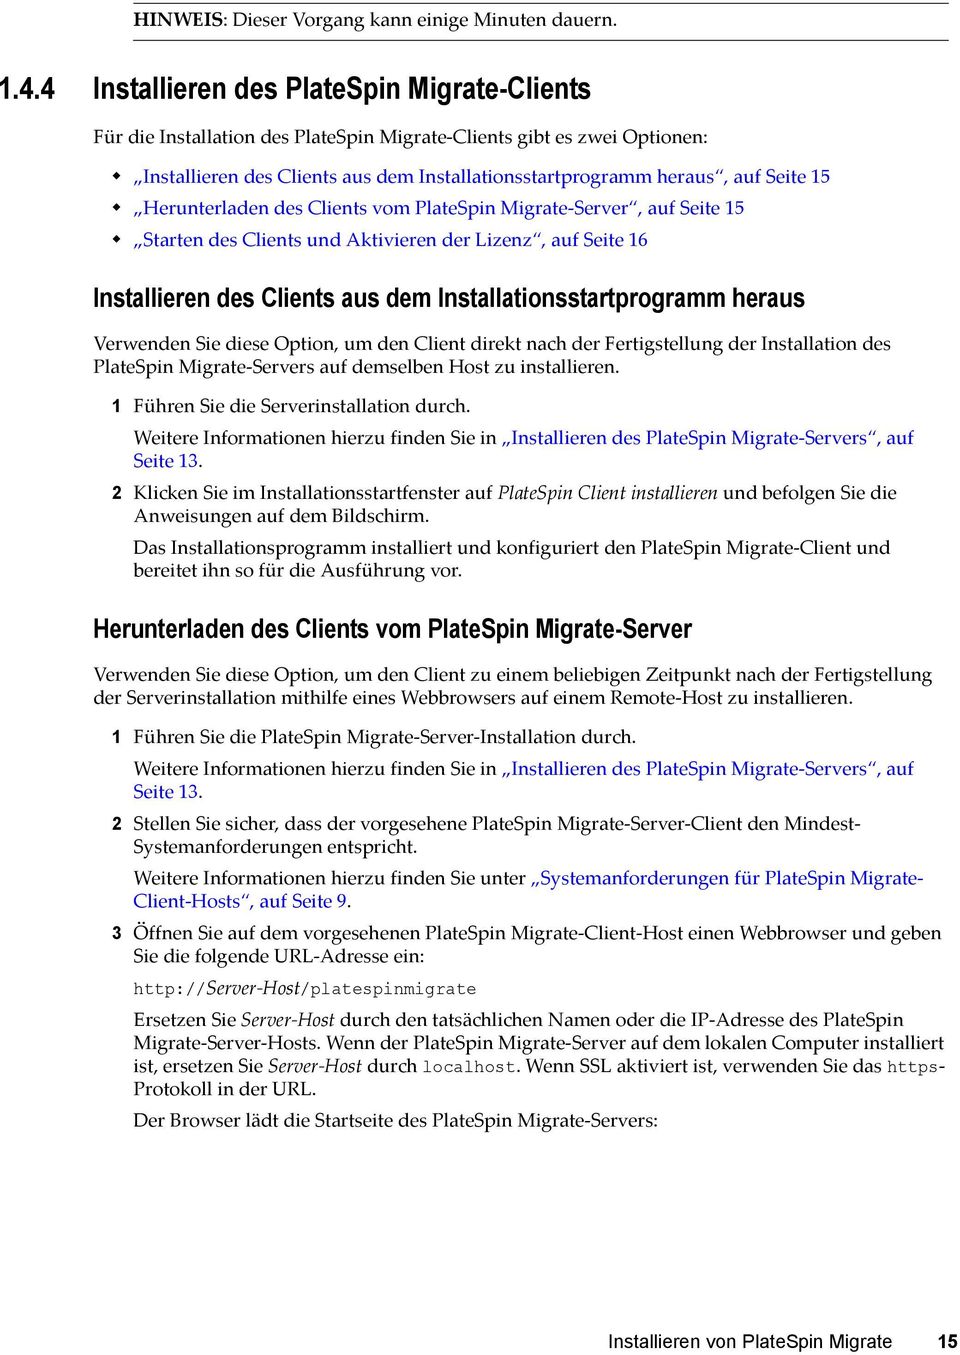 Herunterladen des Clients vom PlateSpin Migrate-Server, auf Seite 15 Starten des Clients und Aktivieren der Lizenz, auf Seite 16 Installieren des Clients aus dem Installationsstartprogramm heraus